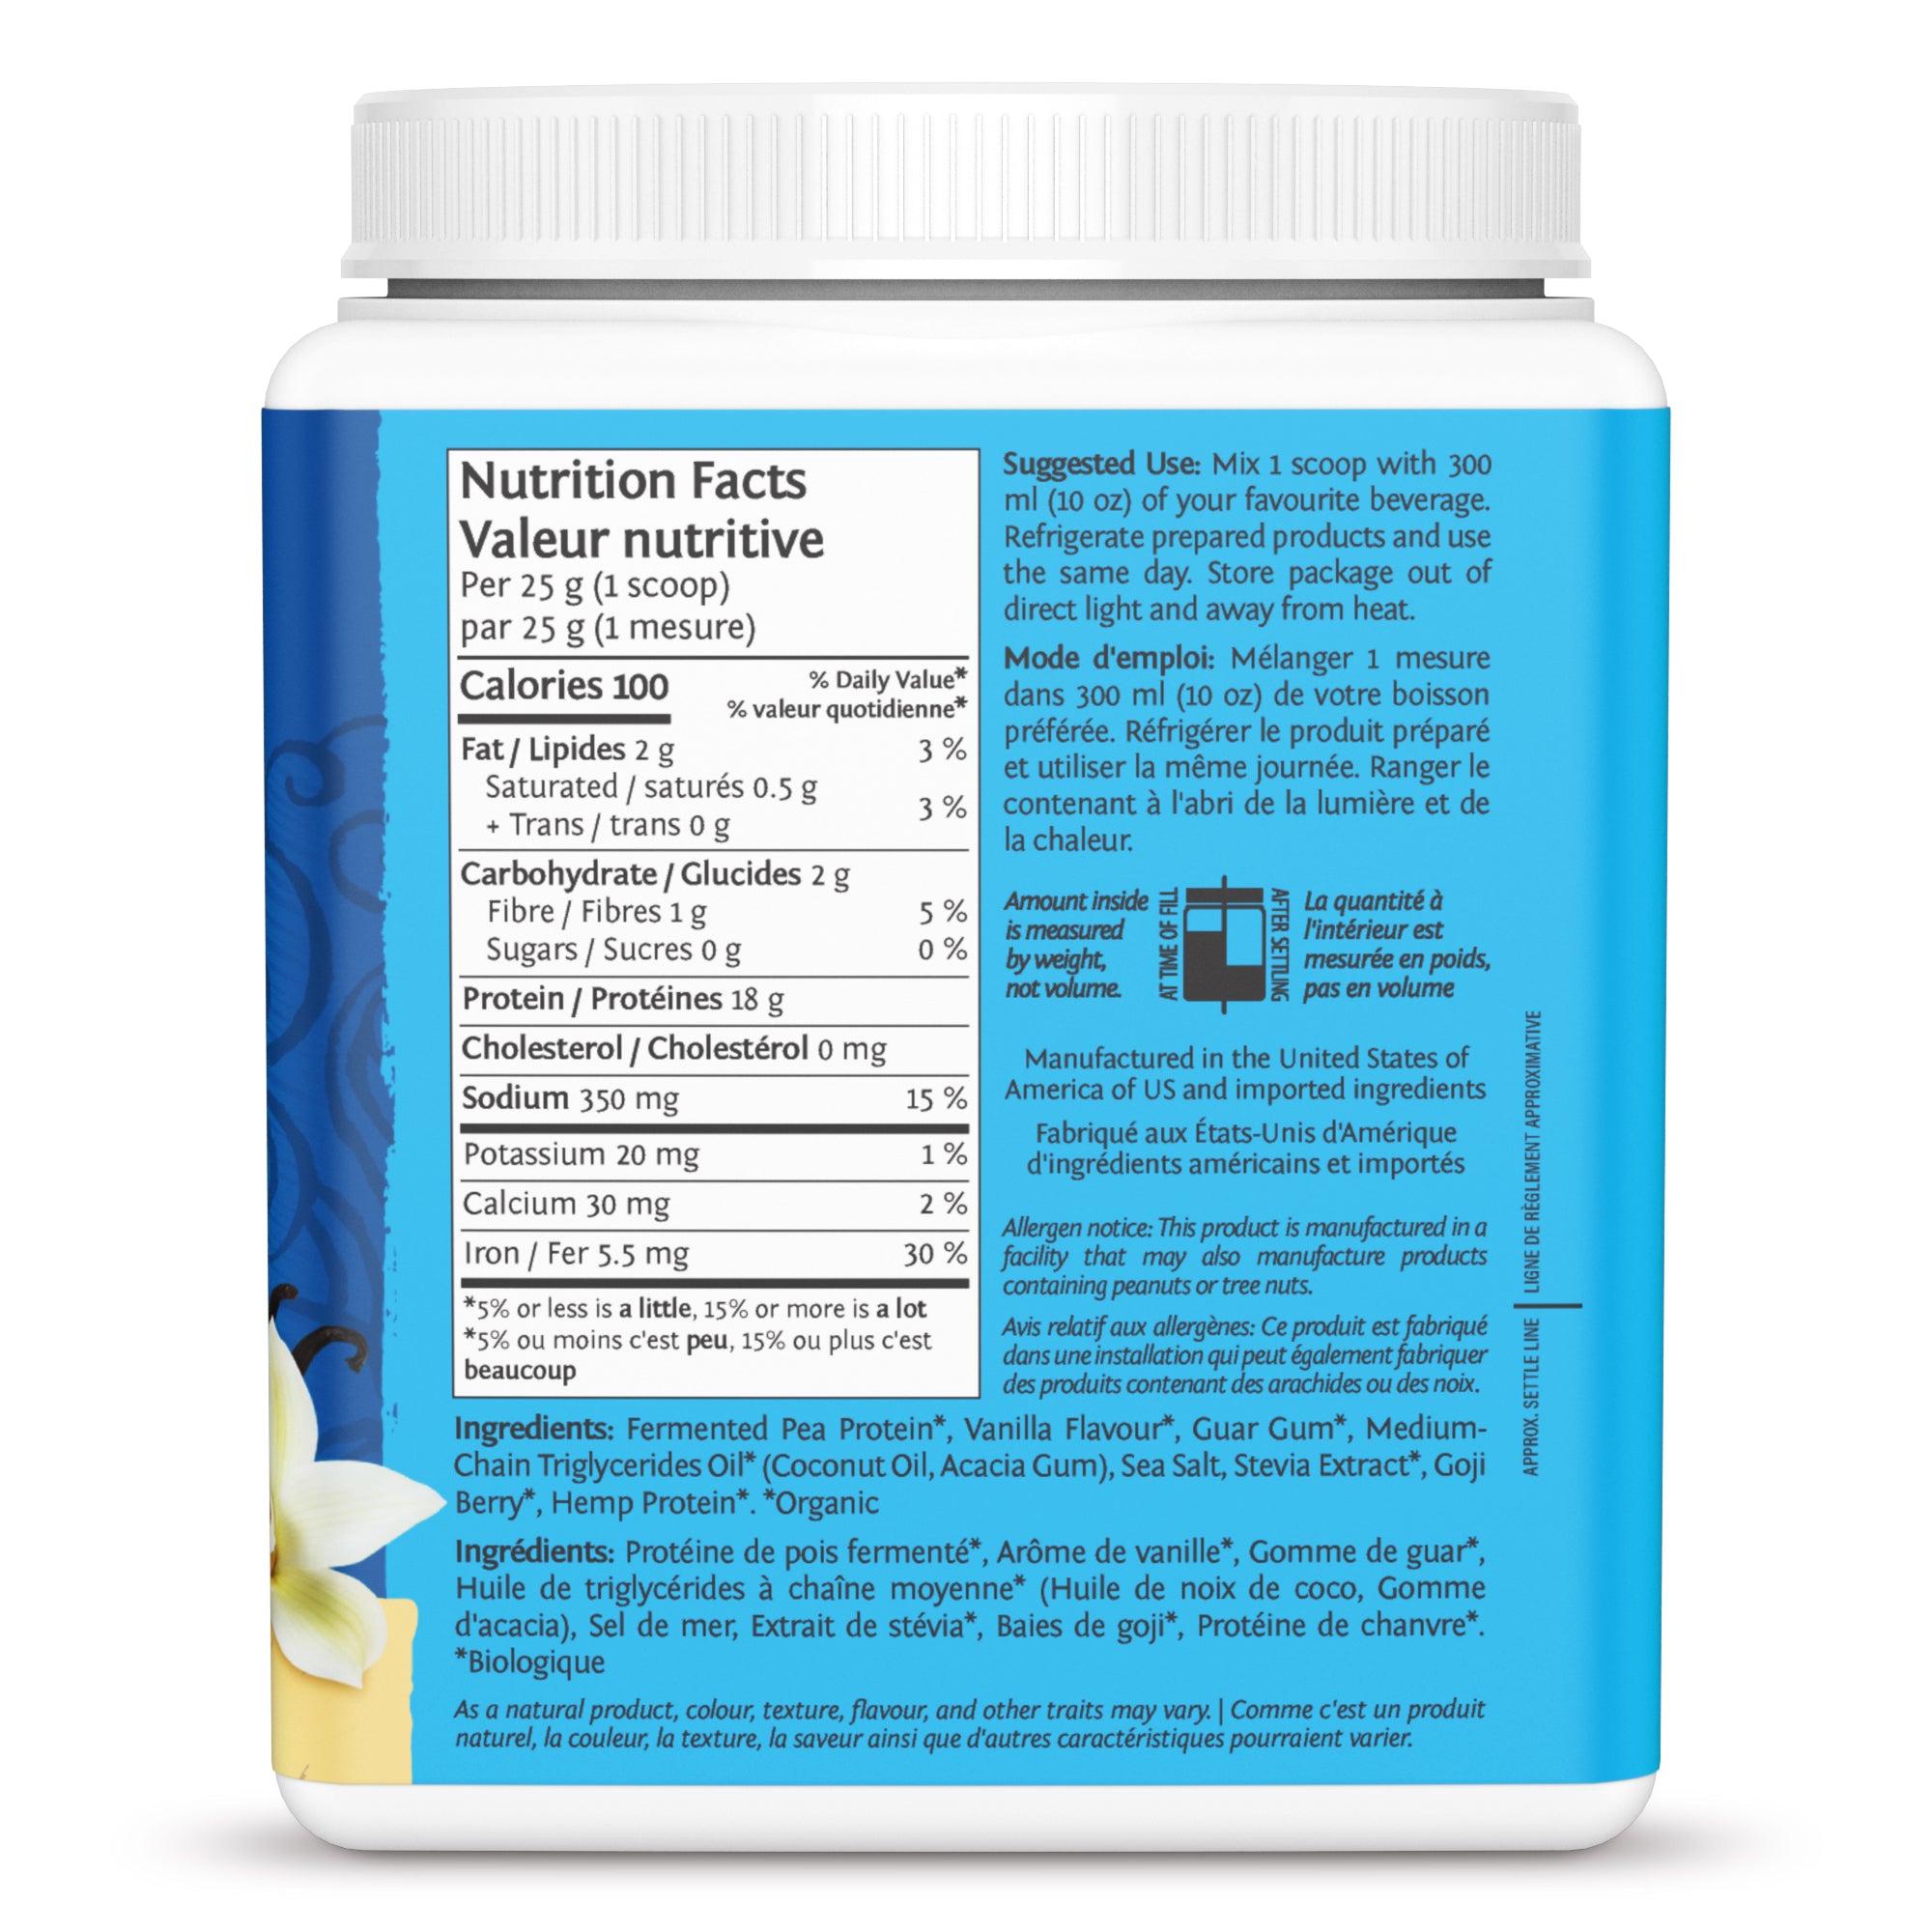 Warrior Blend Protein 375g / Vanilla